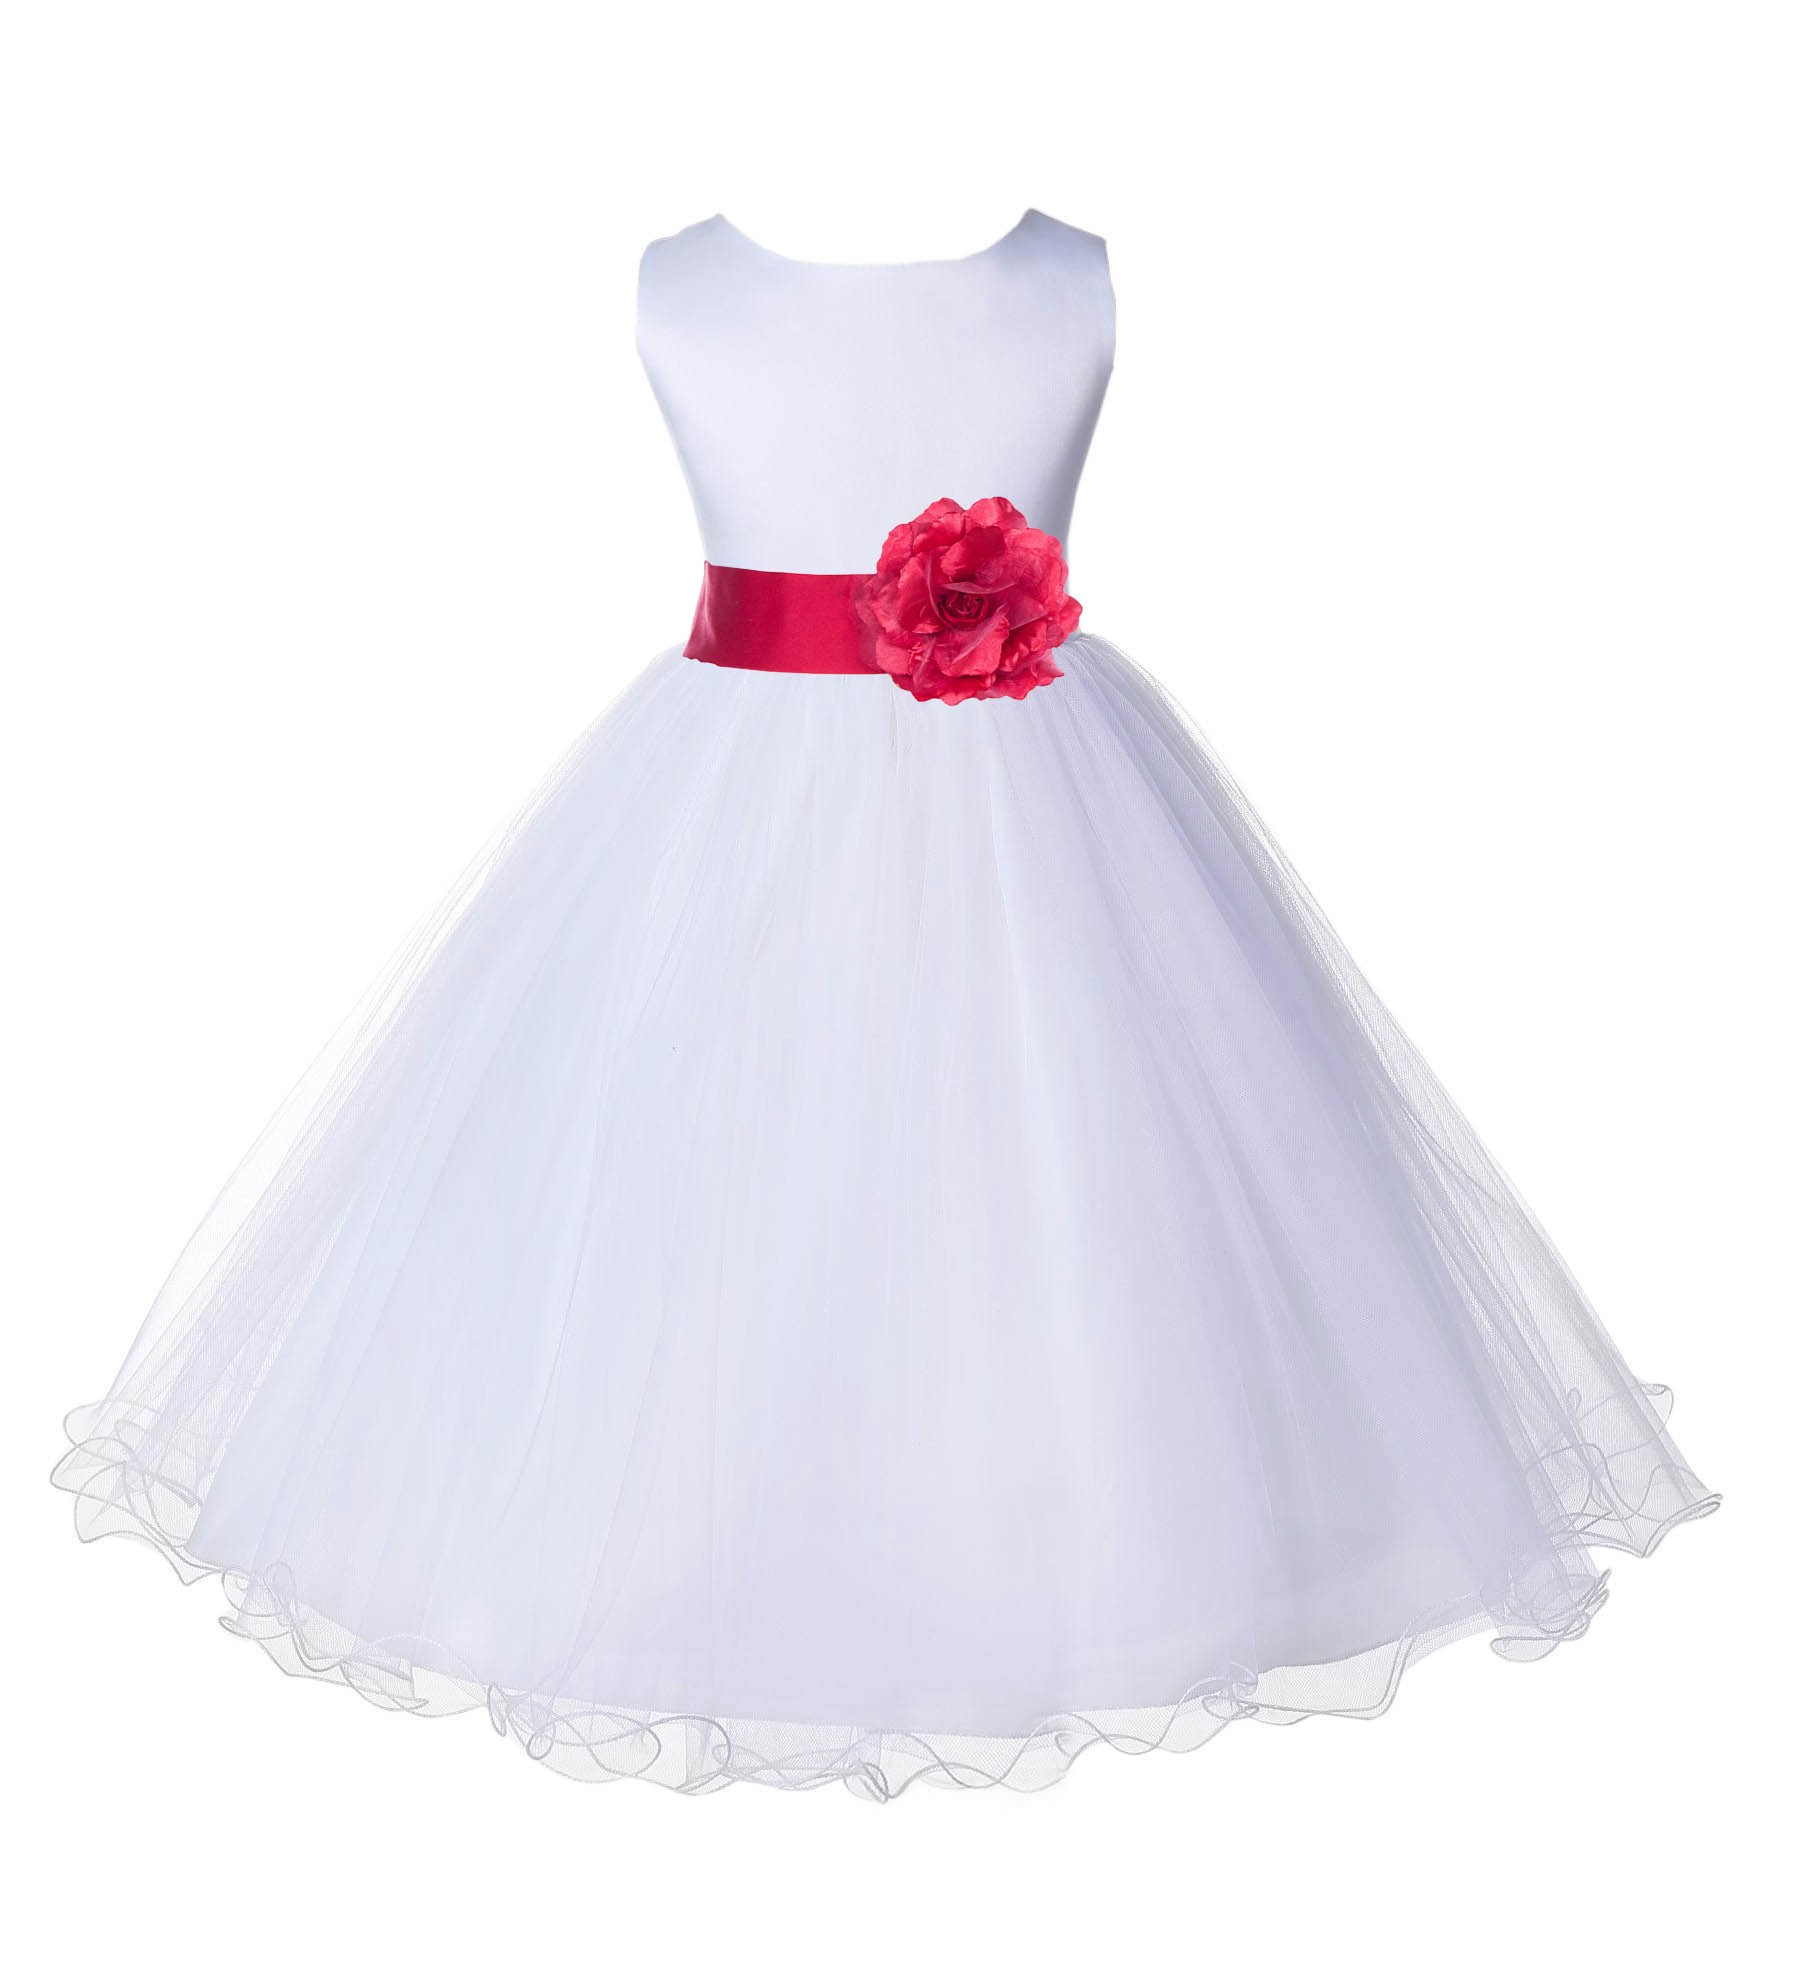 White/Cherry Tulle Rattail Edge Flower Girl Dress Wedding Bridal 829S